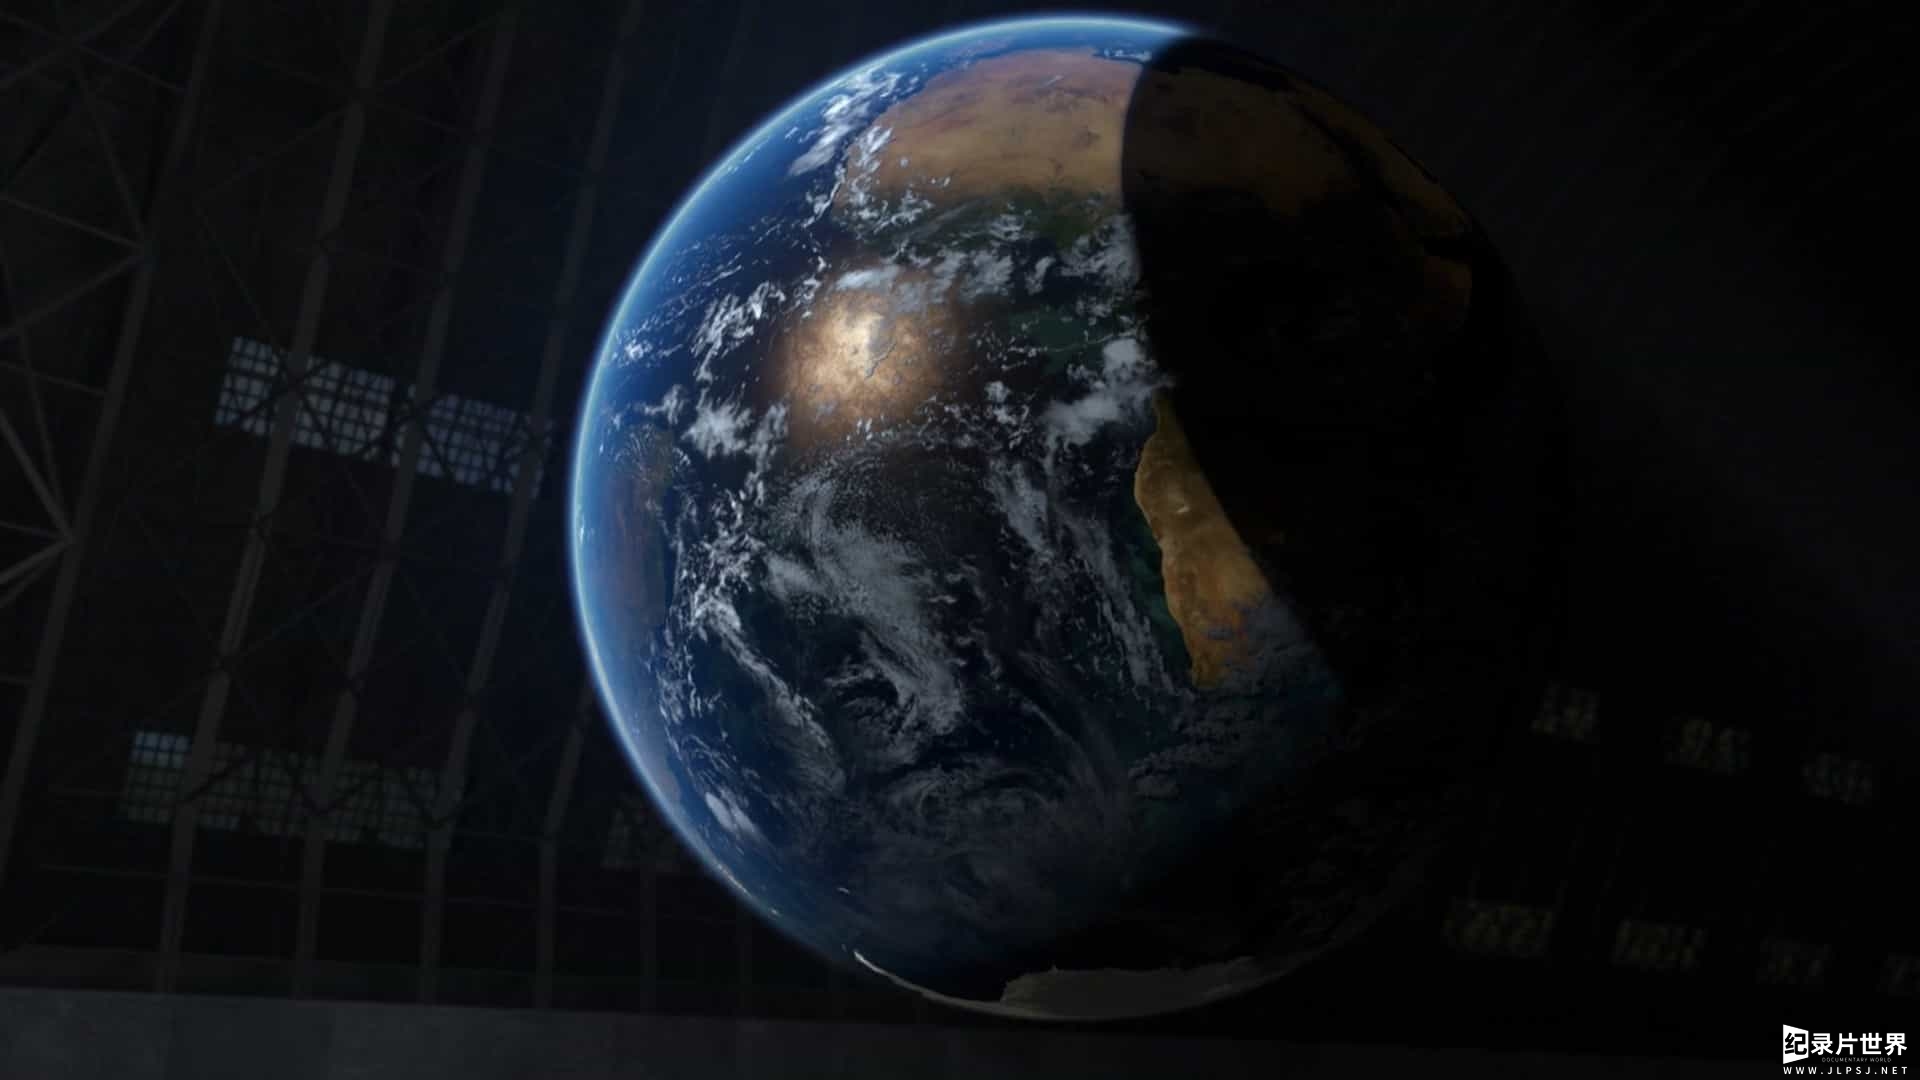 BBC纪录片&探索频道合拍《地球全动力 Earth Machine 2011》全2集